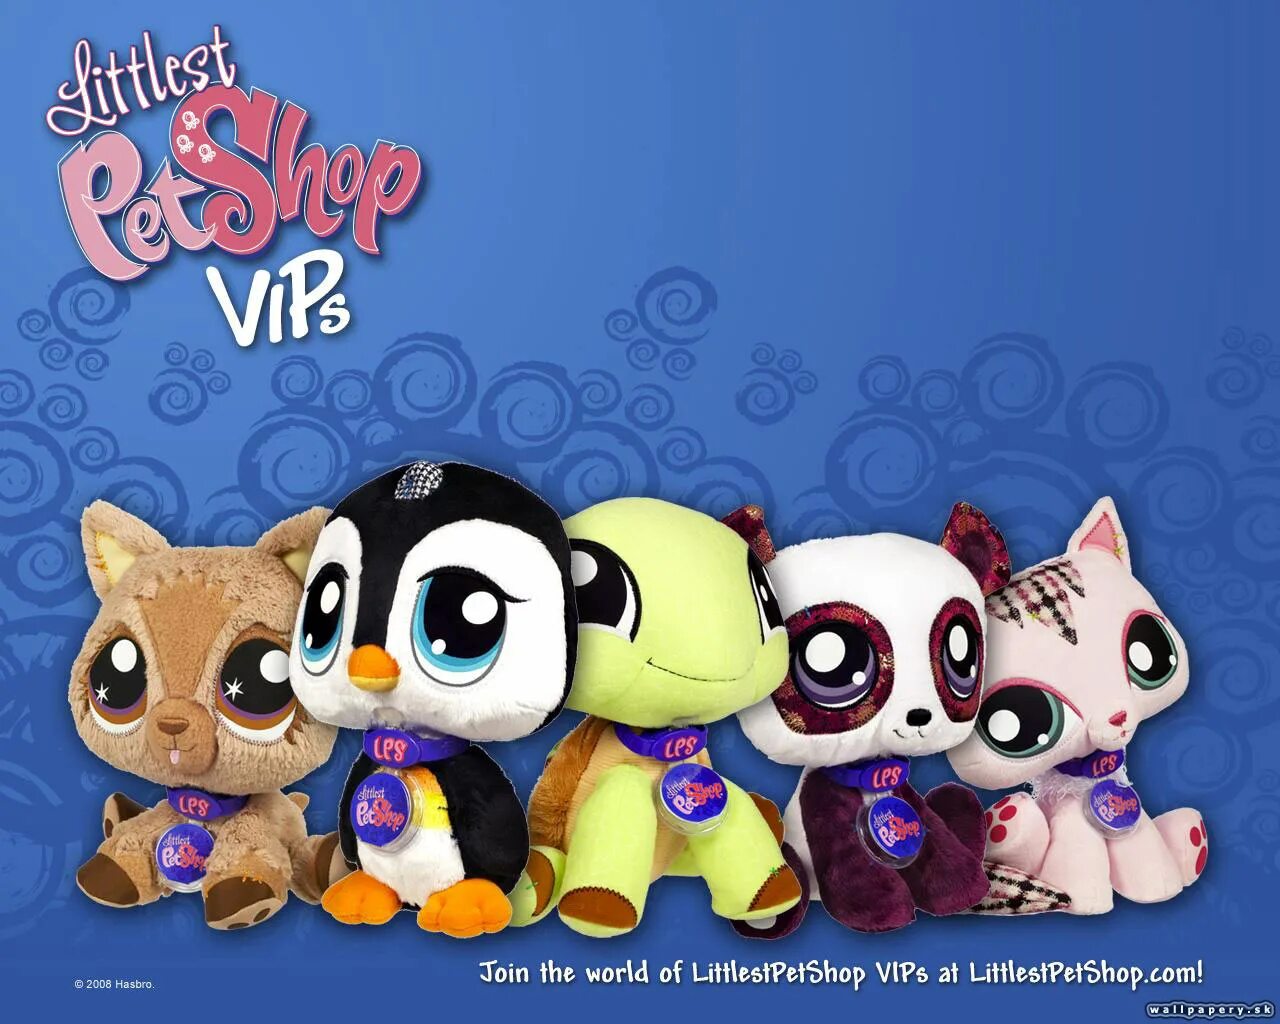 Pet shop 2. Little is Pet shop игра. My Littlest Pet shop игра. Littlest Pet shop 2010. Littlest Pet shop 2011.